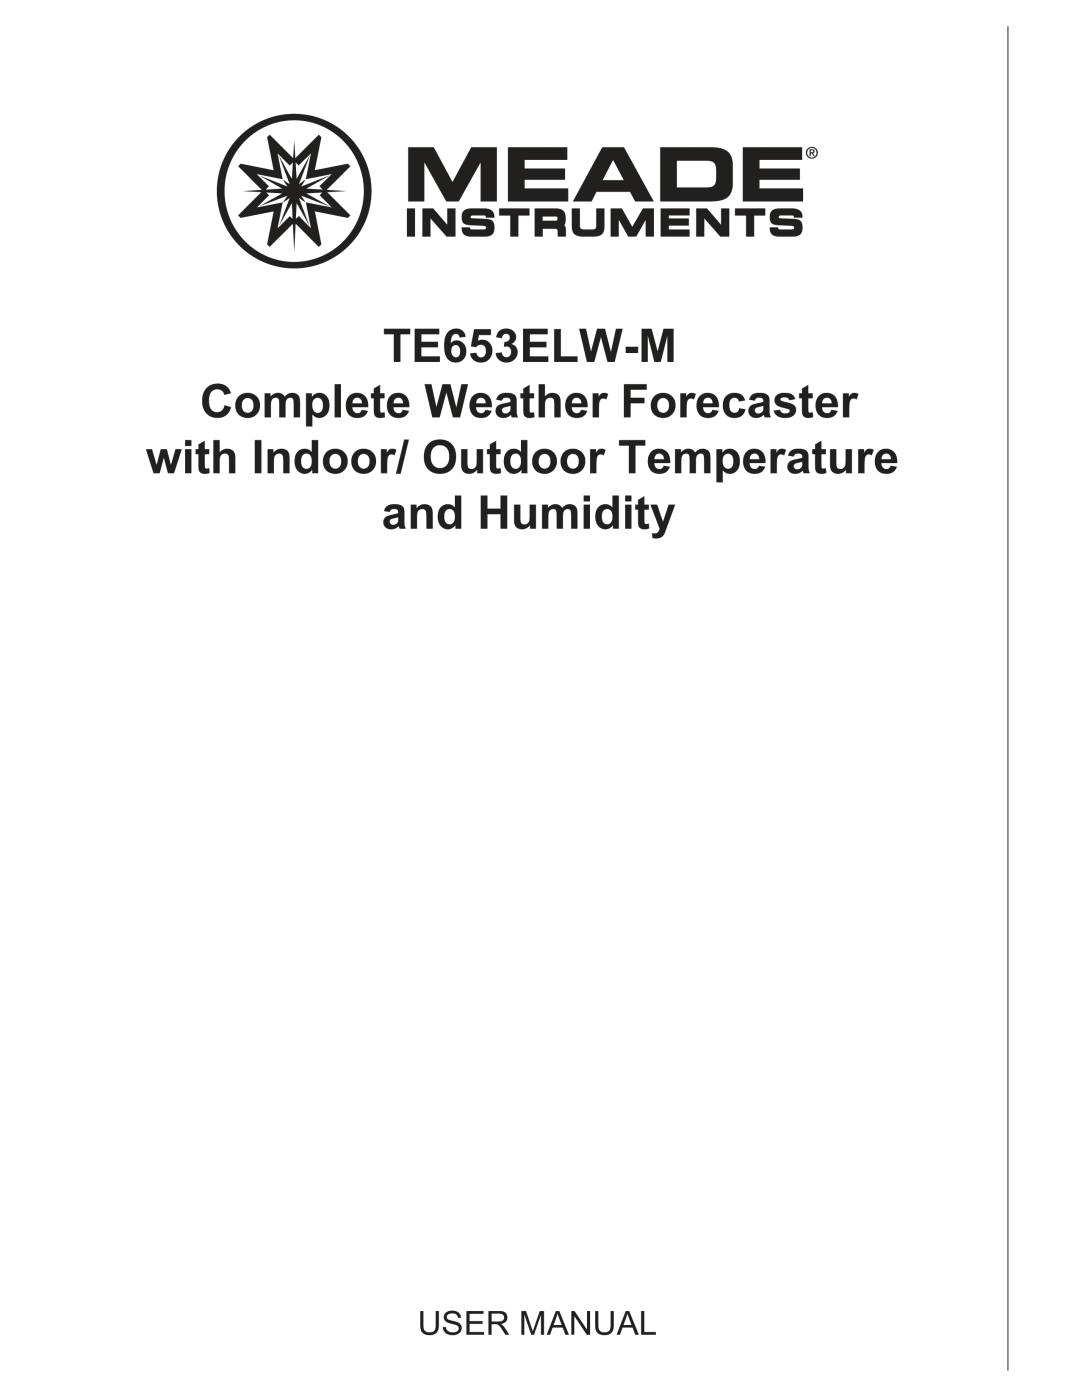 Meade TE653ELW-M user manual 